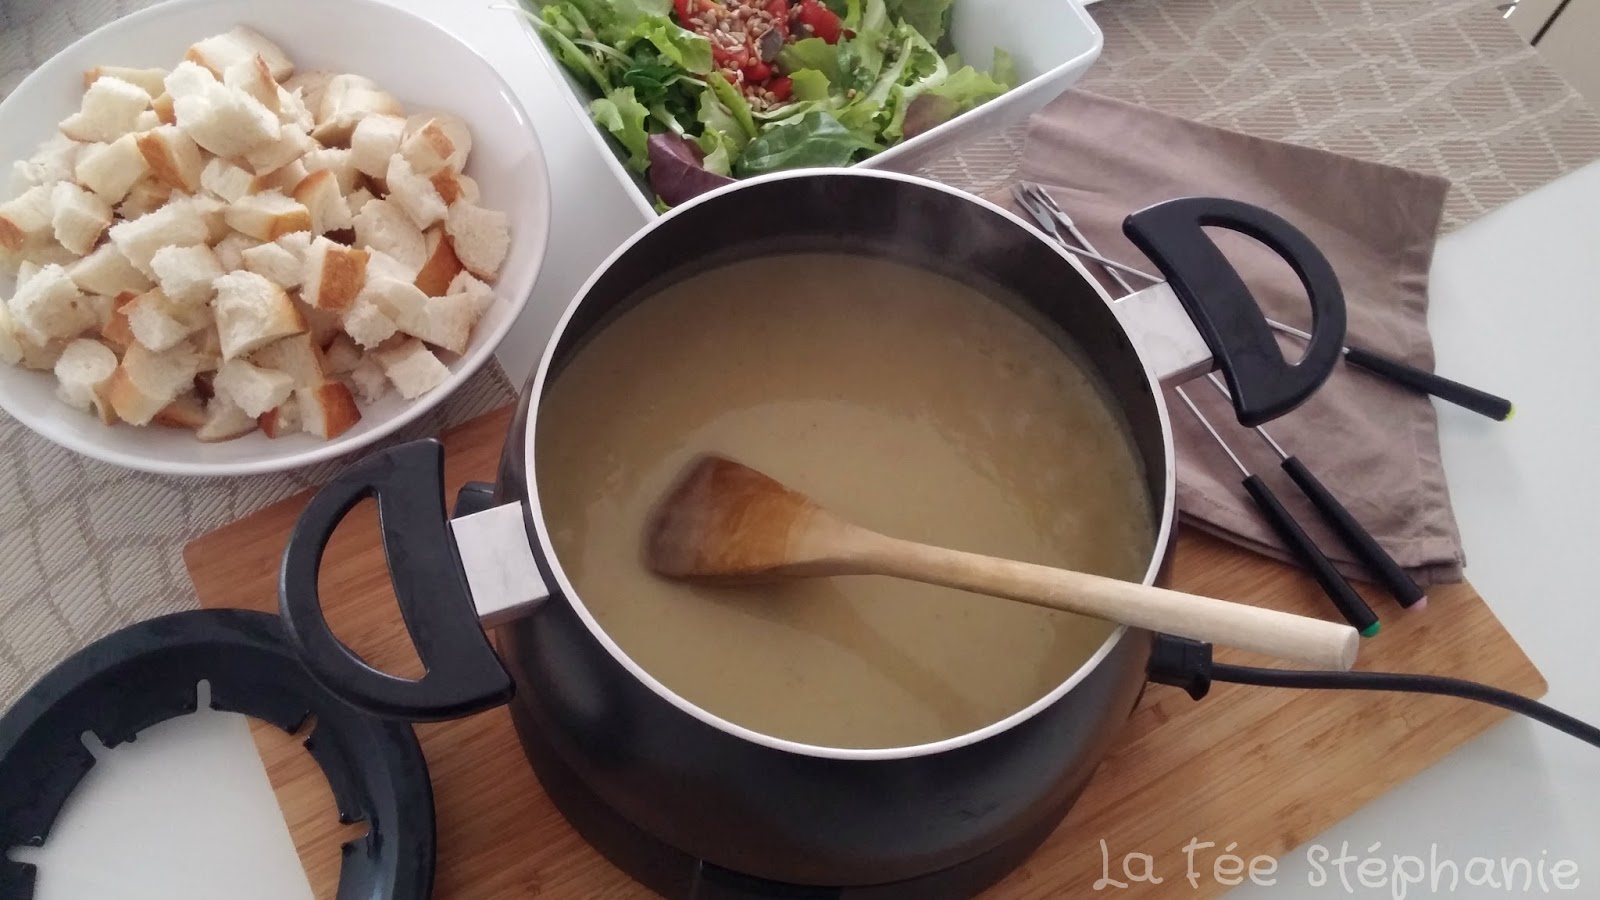 Faut-il mettre de la fécule dans la fondue au fromage ? - Cuisine